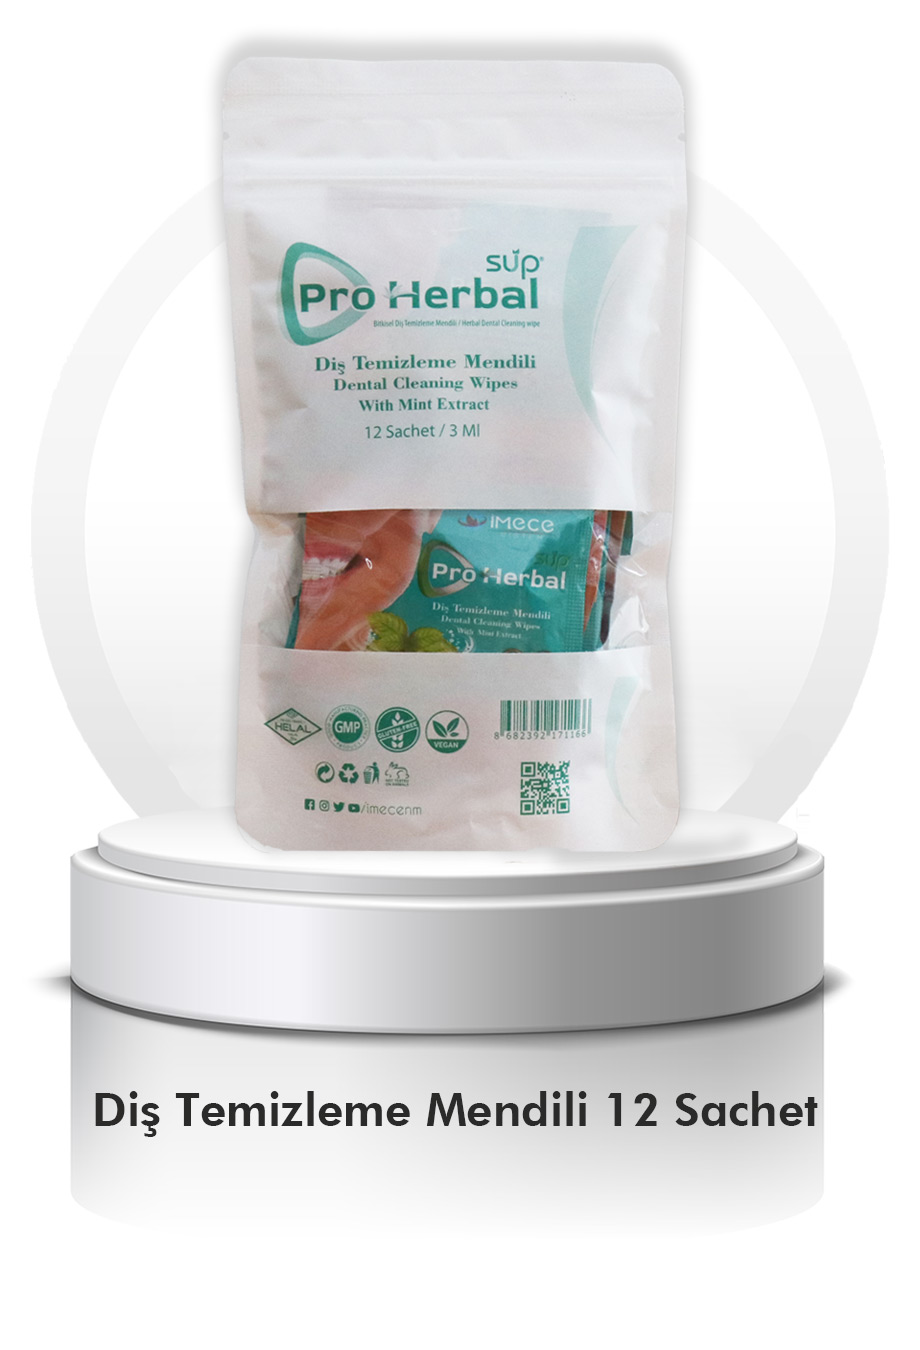 Sup Pro Herbal Bitkisel Diş Temizleme Mendili 12 SACHET MİNT